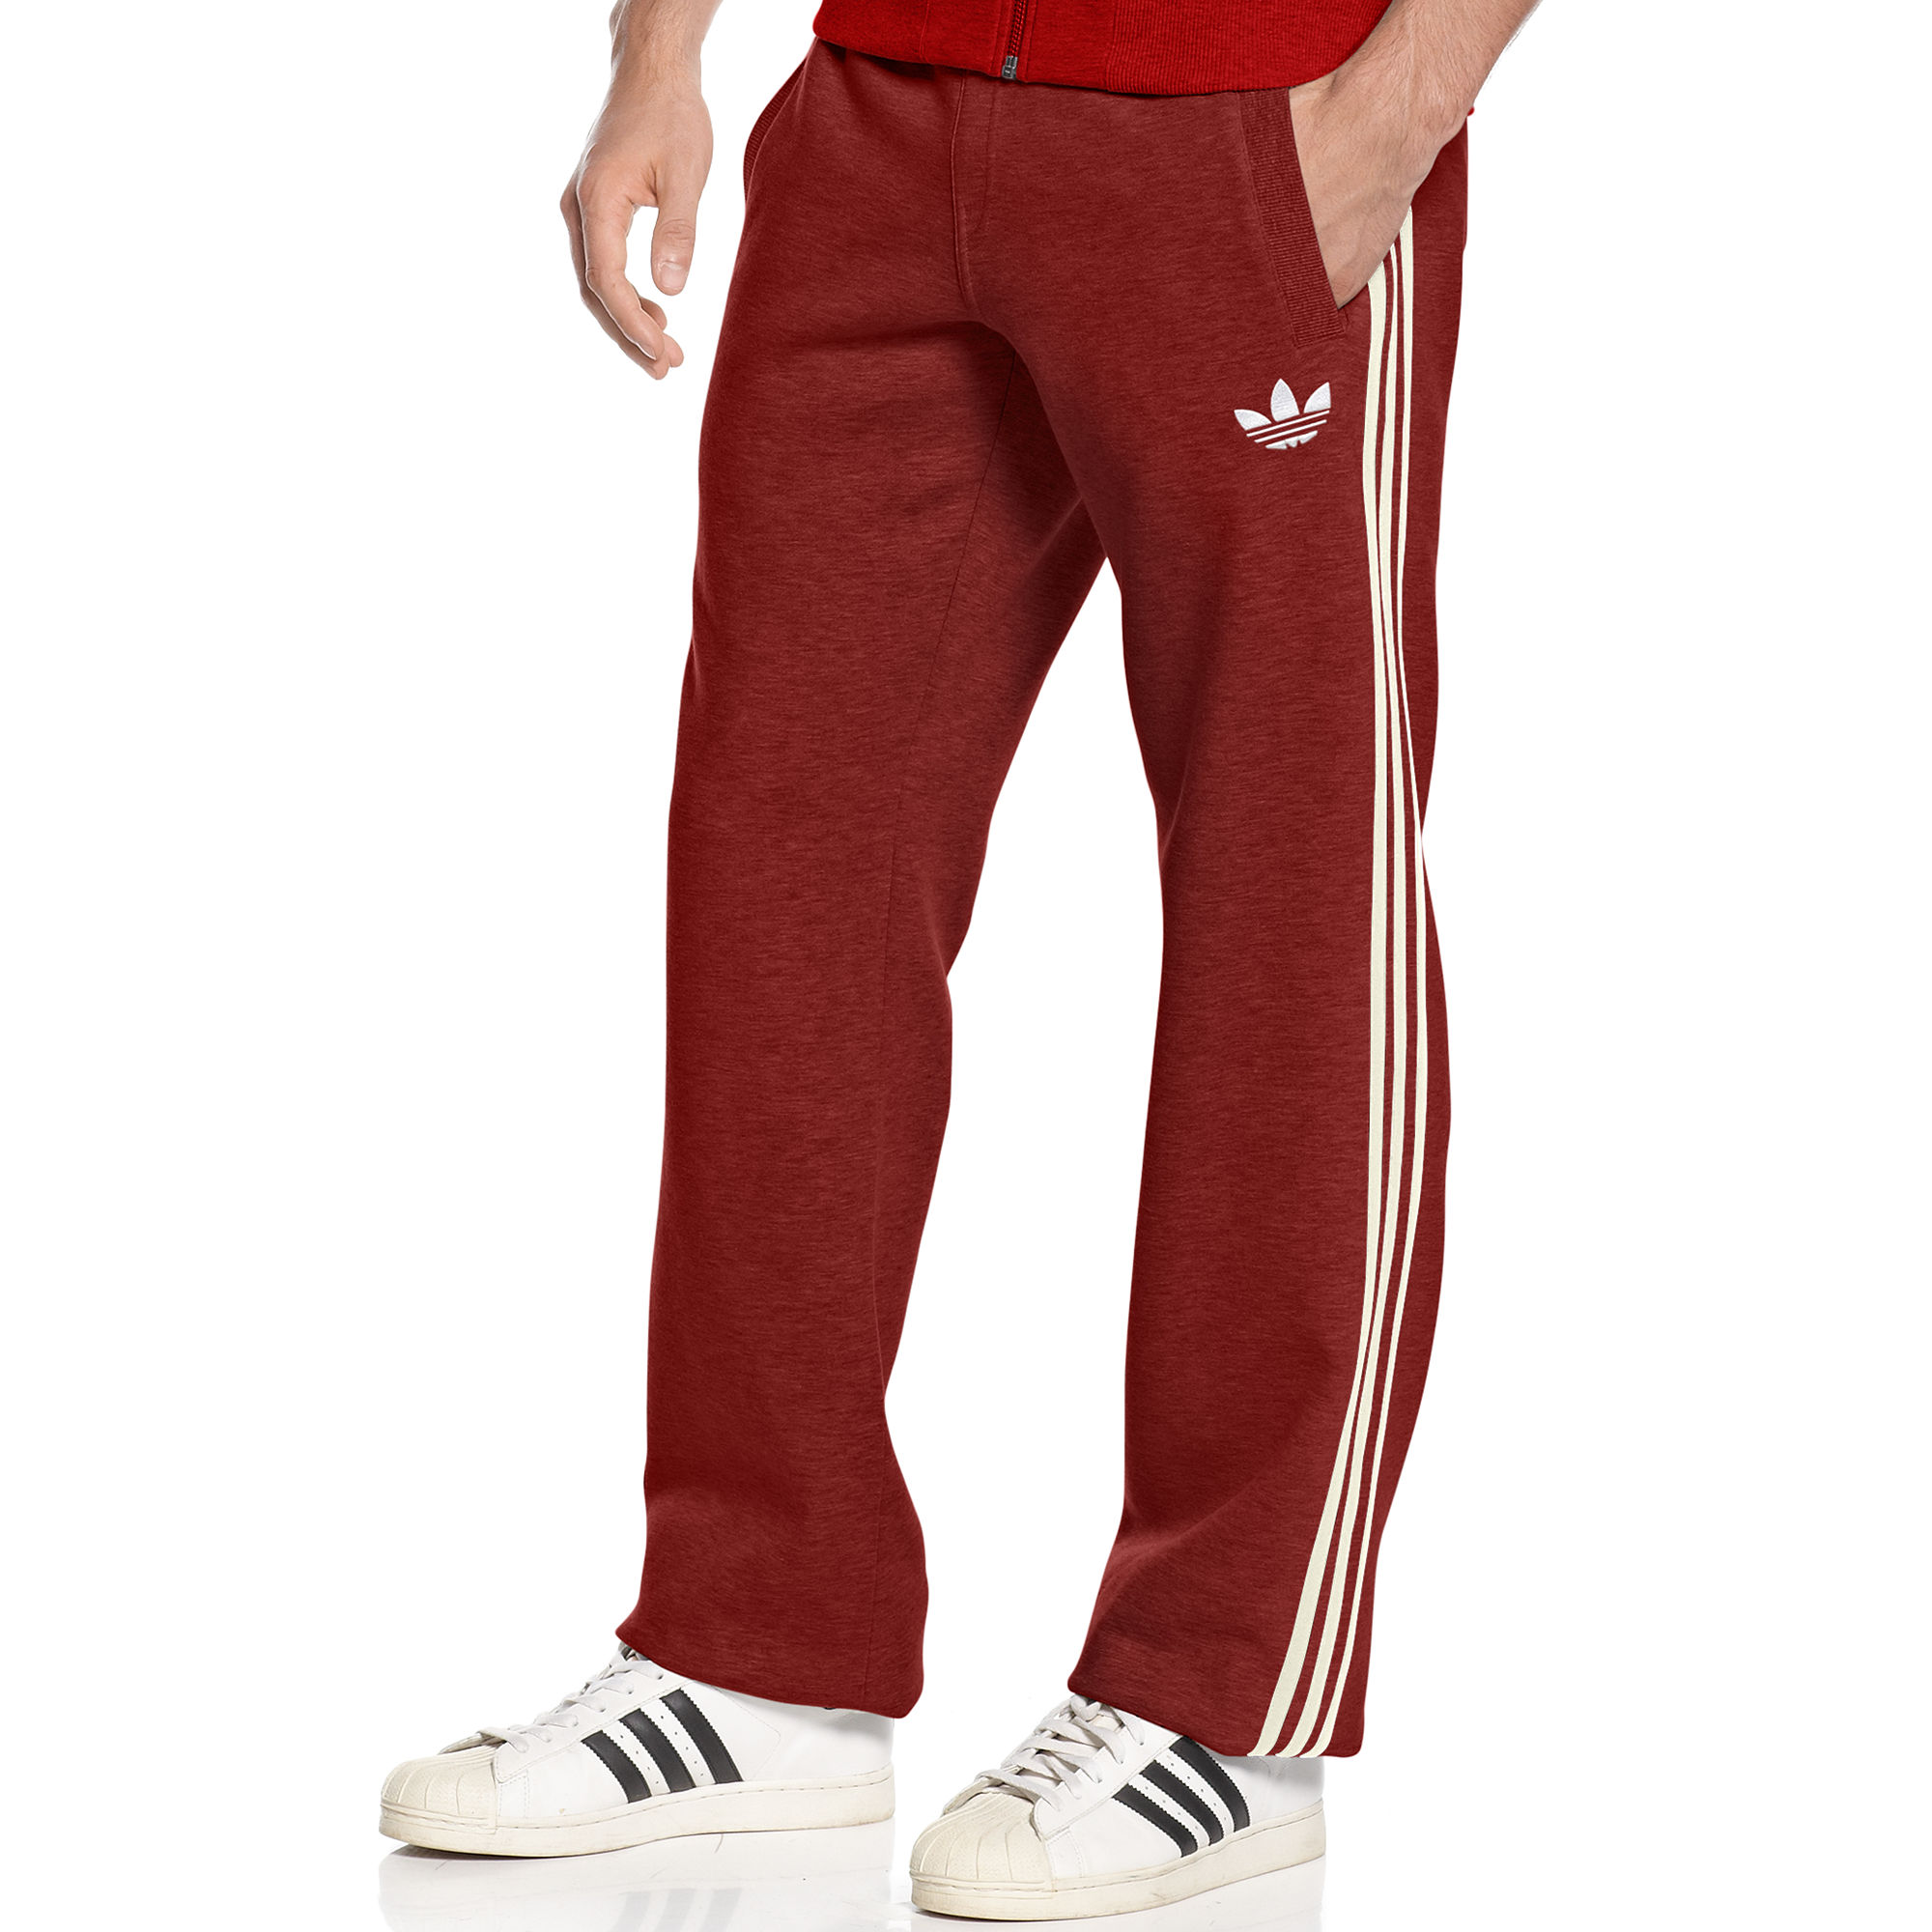 Lyst - Adidas Originals Fleece Track Pants in Red for Men